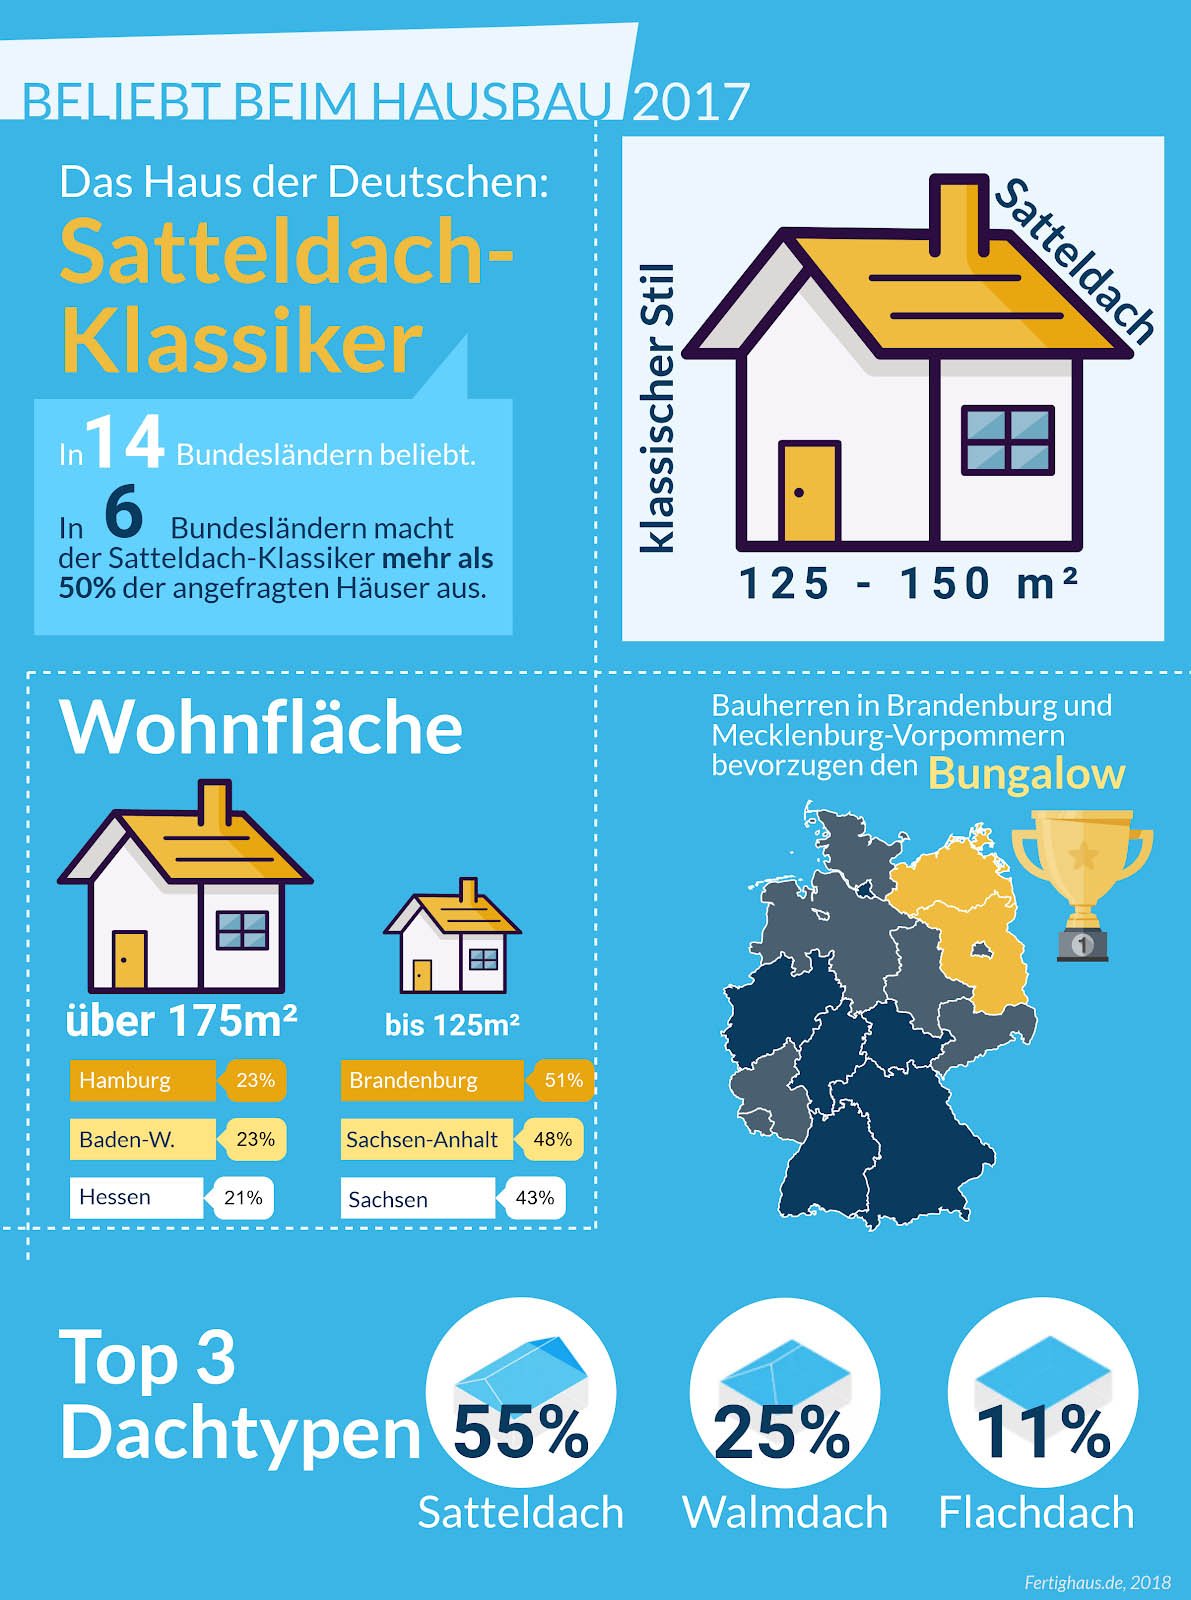 Vorlieben beim Hausbau 2017: So sieht das Haus der Deutschen aus picture ean50 GmbH